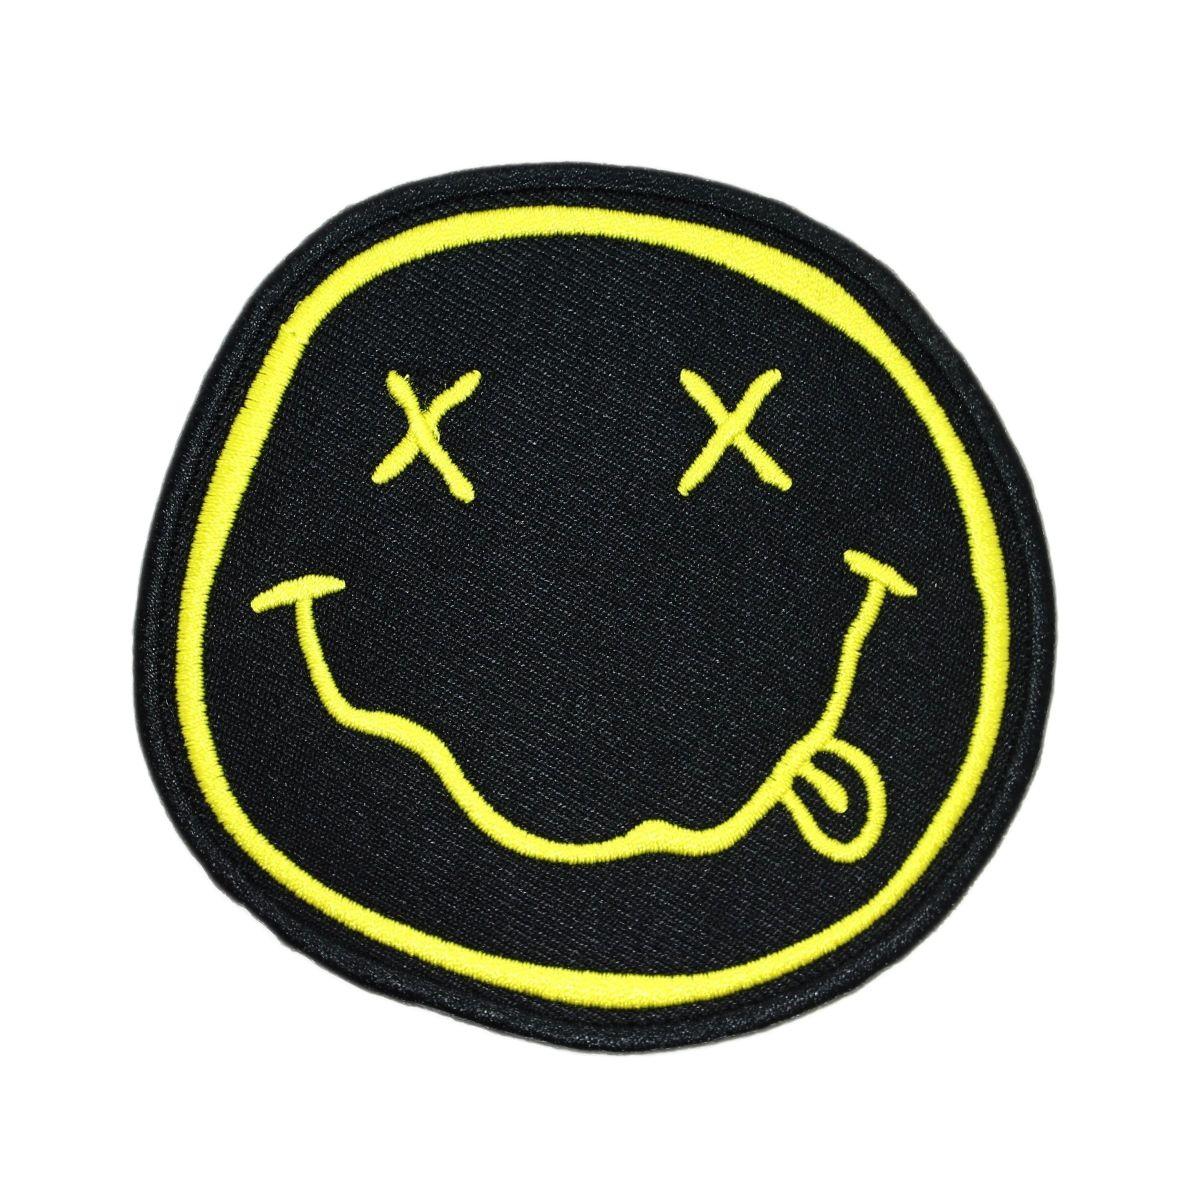 Nirvana Smiley Face Logo - Nirvana Smiley Face Logo Patch Grunge Rock Fan Merchandise Iron